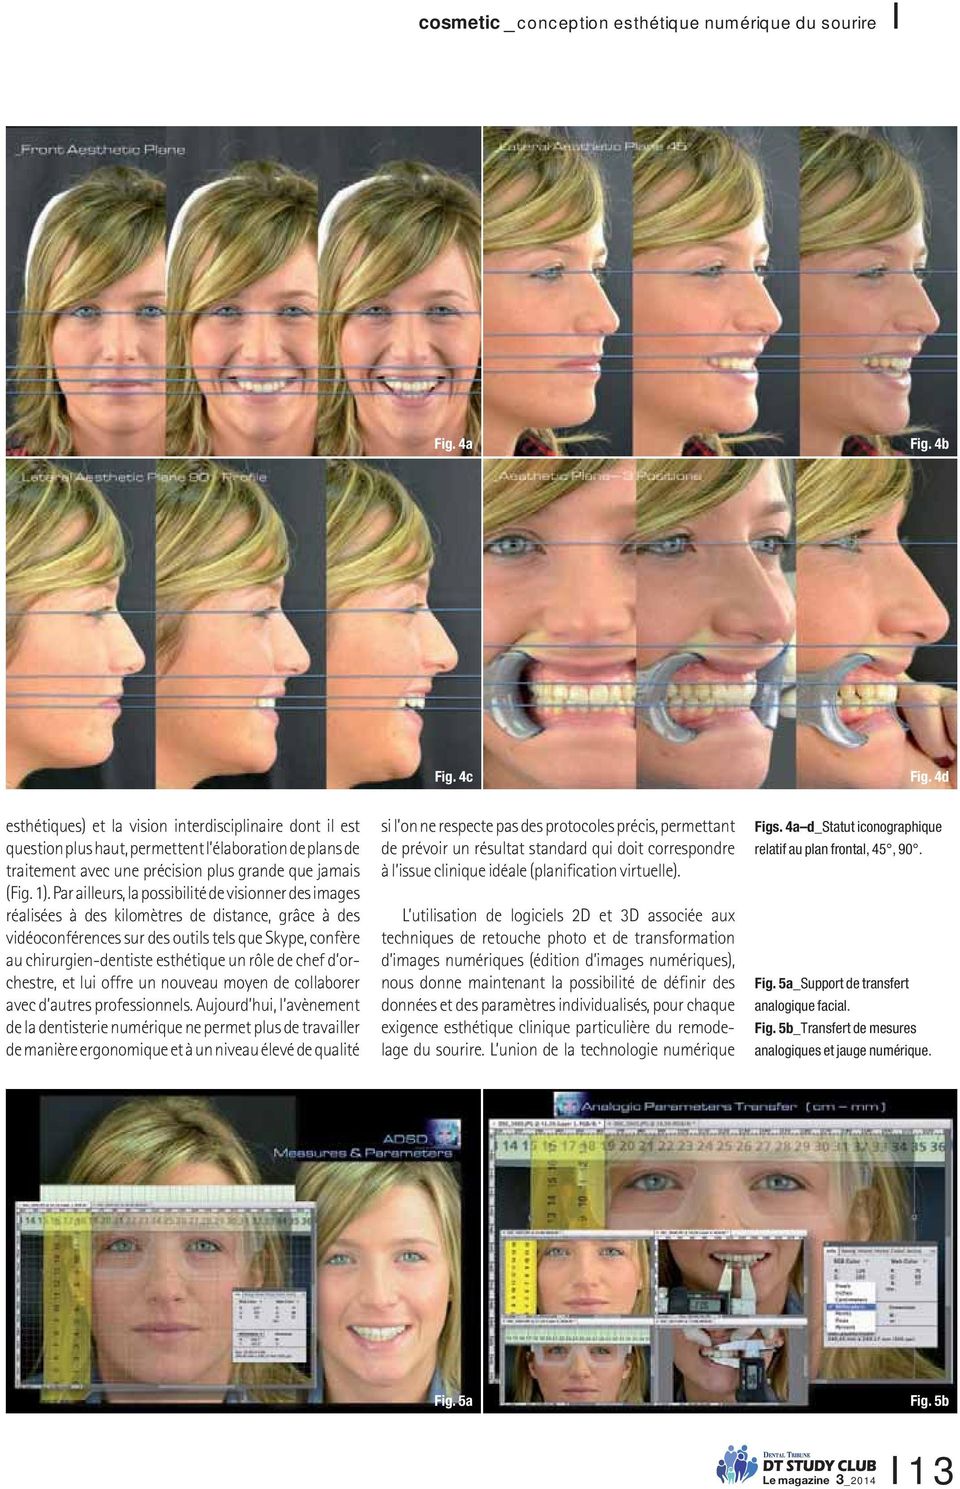 Par ailleurs, la possibilité de visionner des images réalisées à des kilomètres de distance, grâce à des vidéoconférences sur des outils tels que Skype, confère au chirurgien-dentiste esthétique un